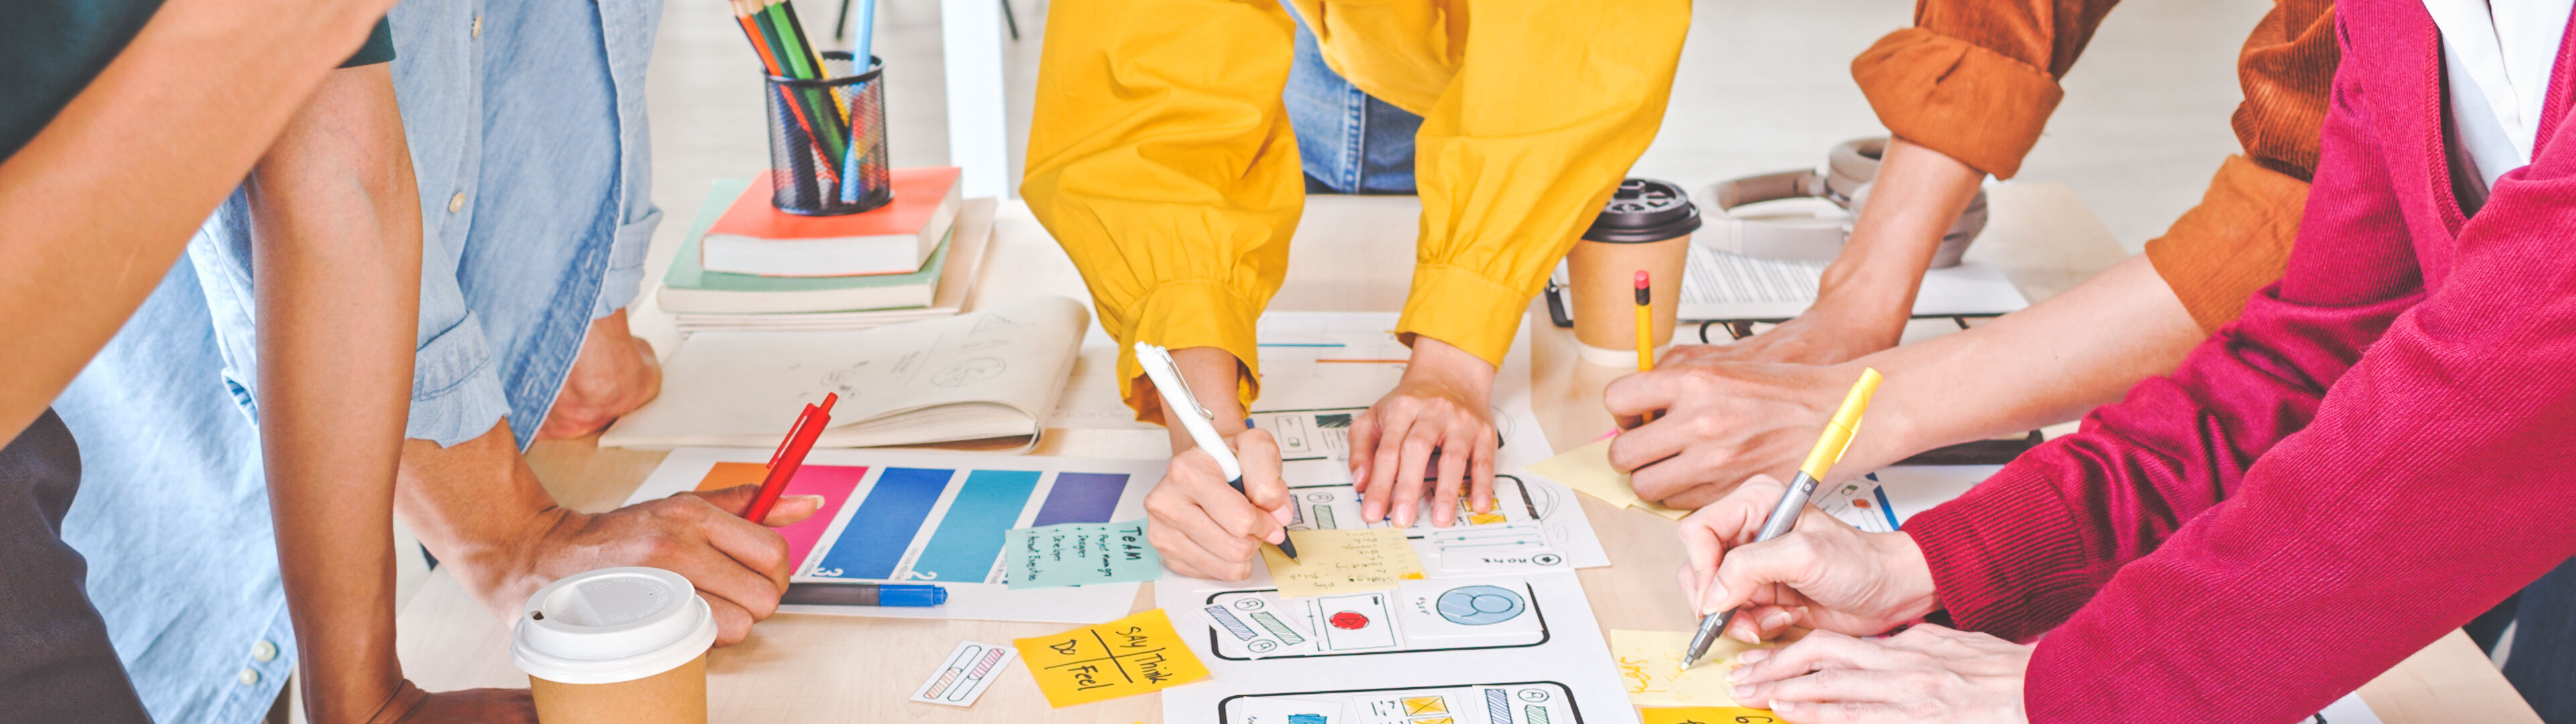 Un equipo de profesionales participa en un taller creativo, trabajando en maquetas de diseño y notas de colores esparcidas en una mesa.